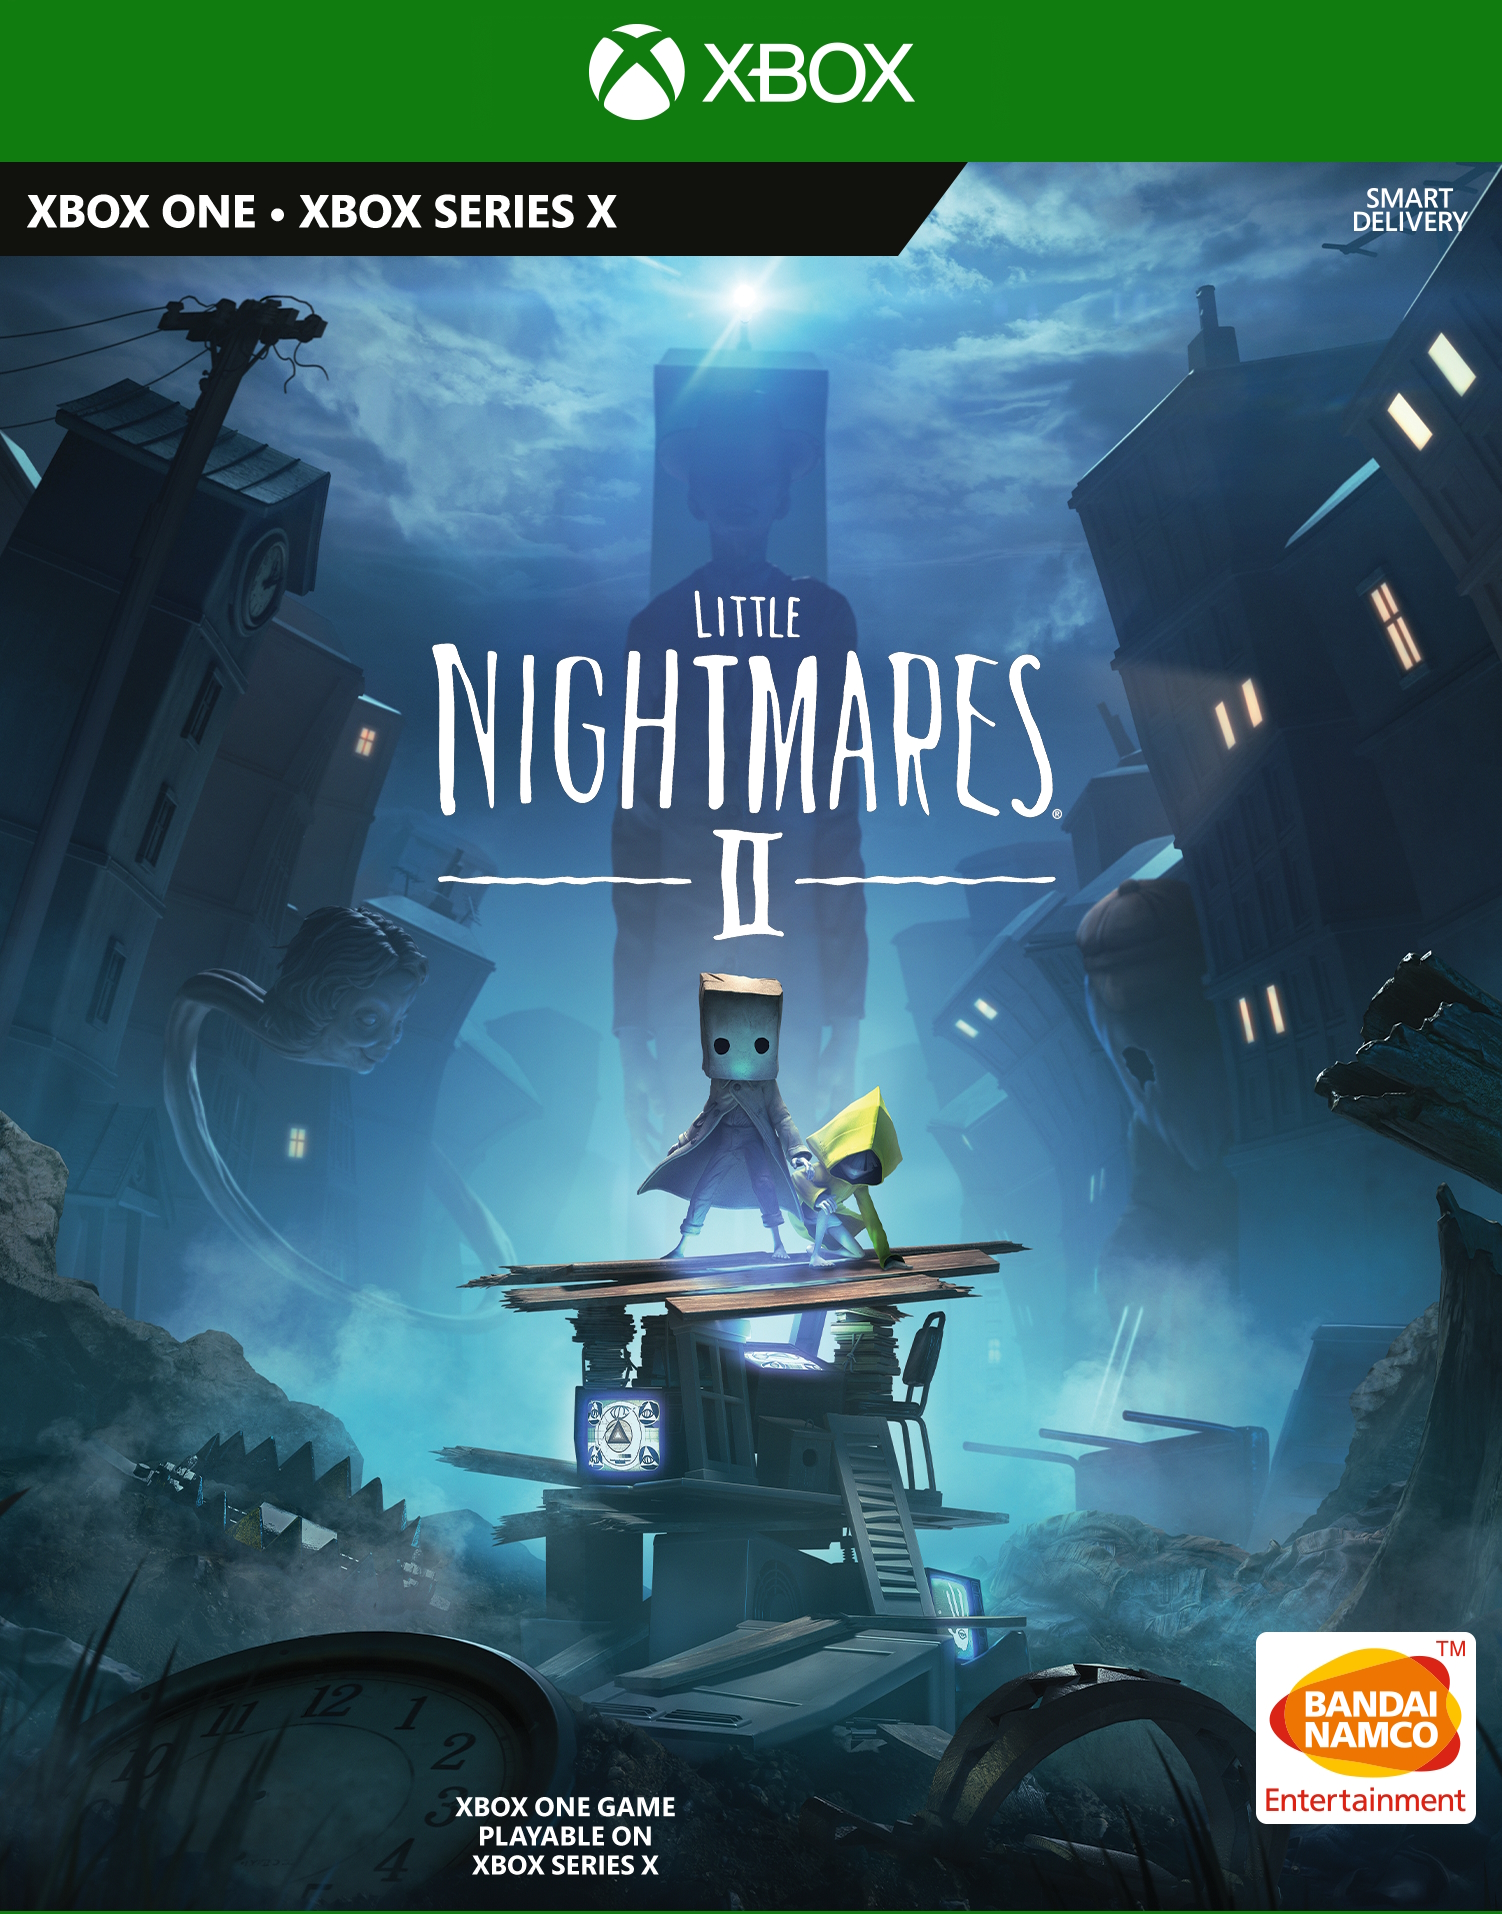 jaquette reduite de Little Nightmares II sur Xbox Series